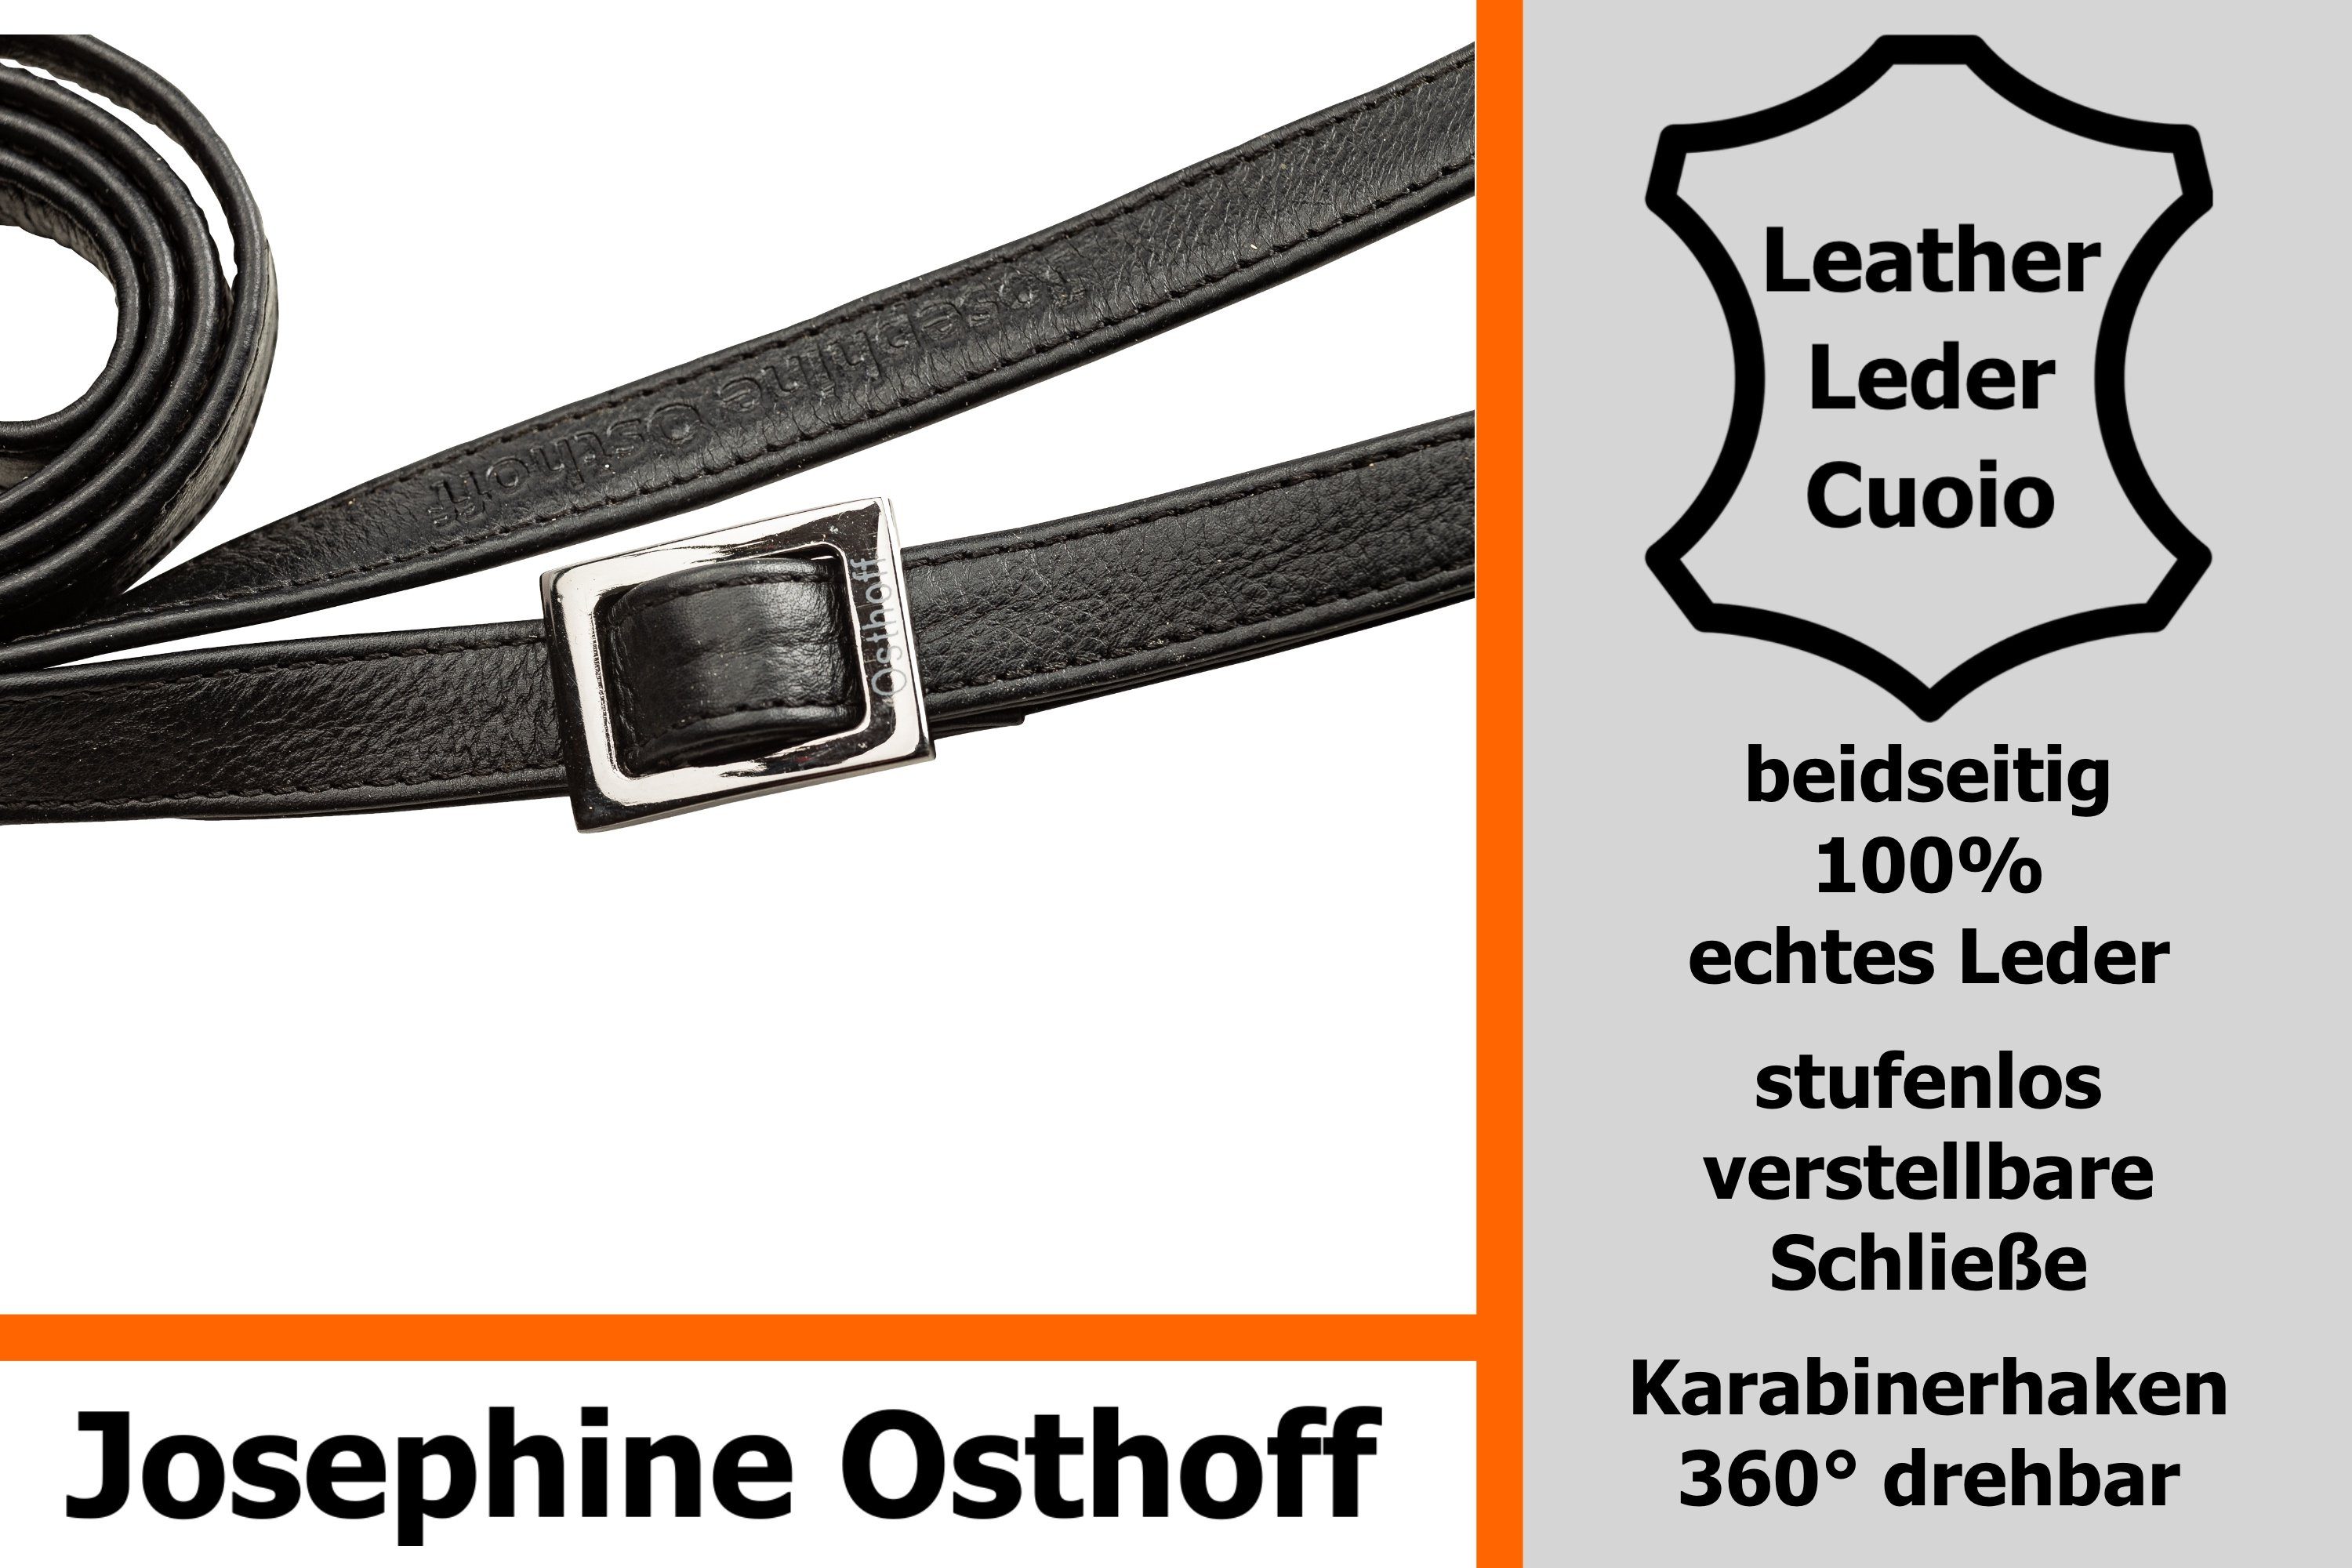 Josephine Osthoff Schulterriemen Schulterriemen 1,5 cm schwarz/anthrazit